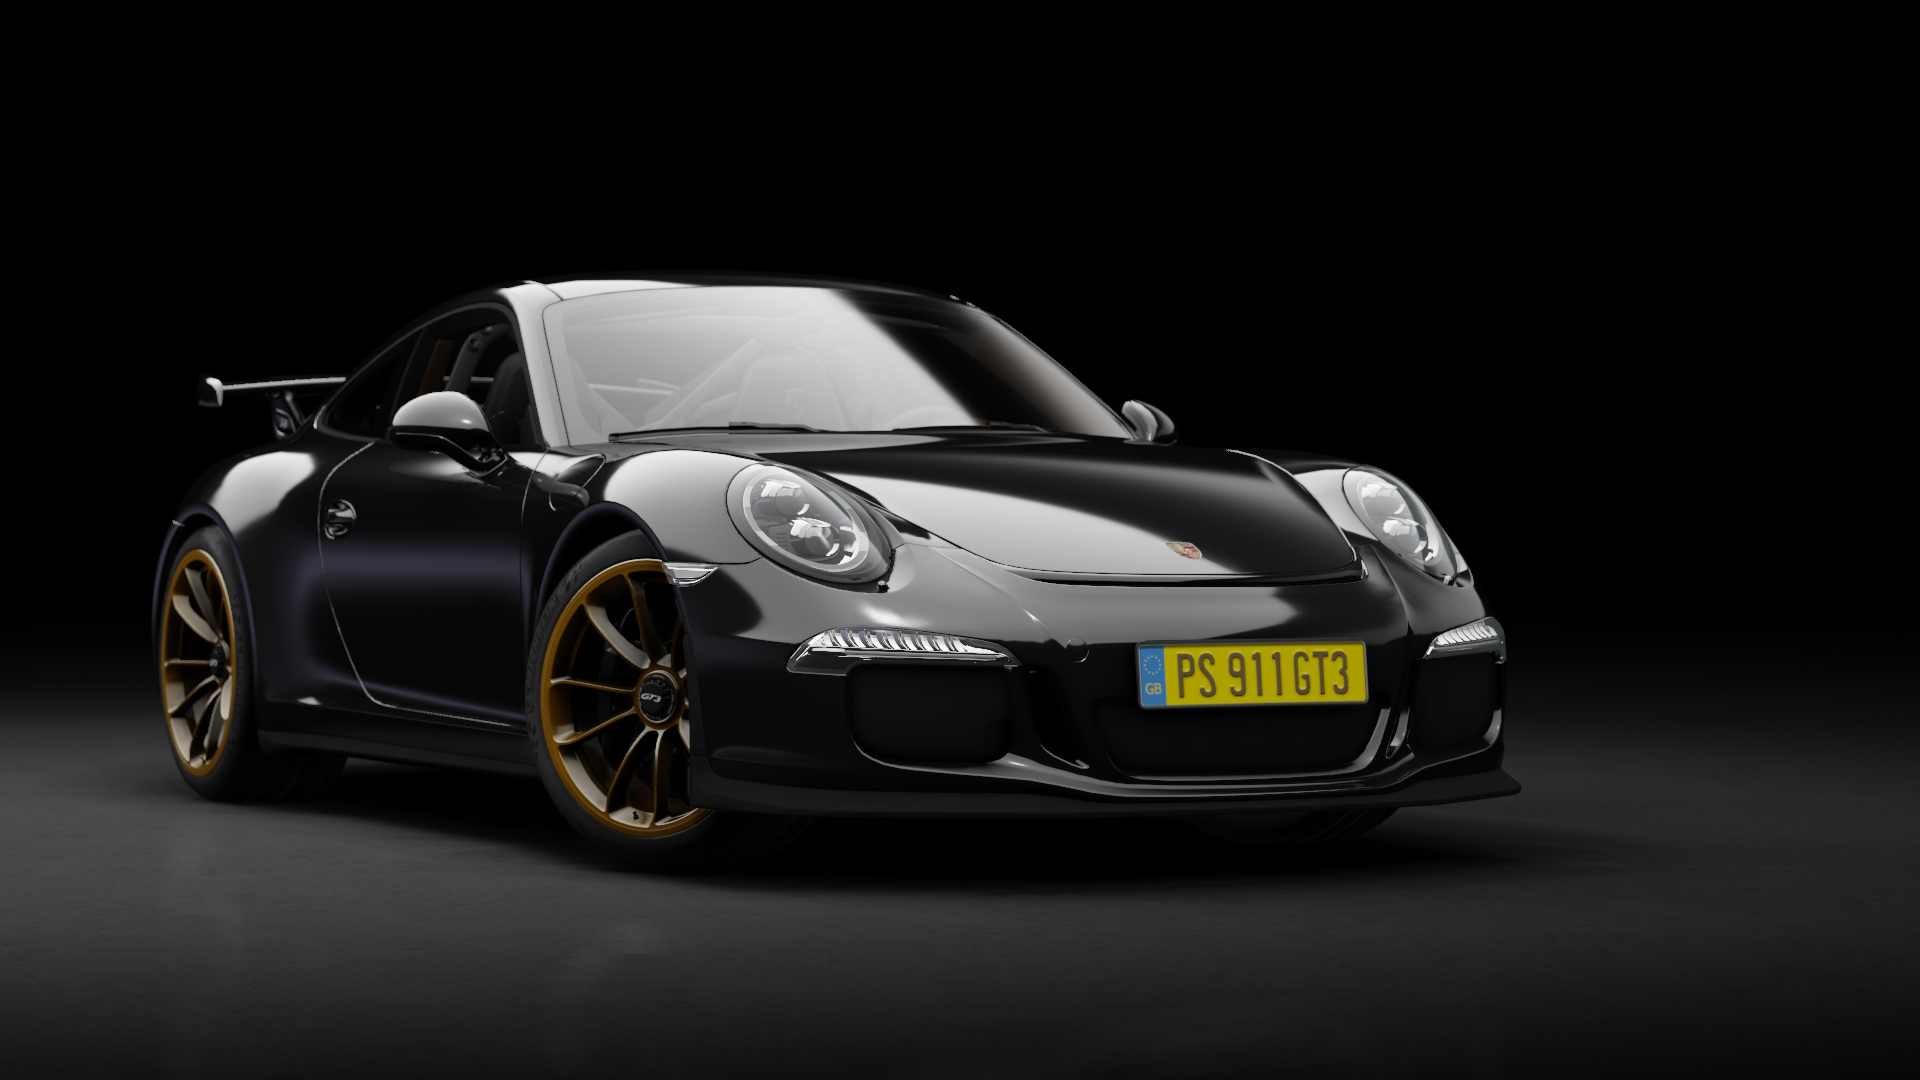 Porsche 911 GT3 (991) 2013, skin black